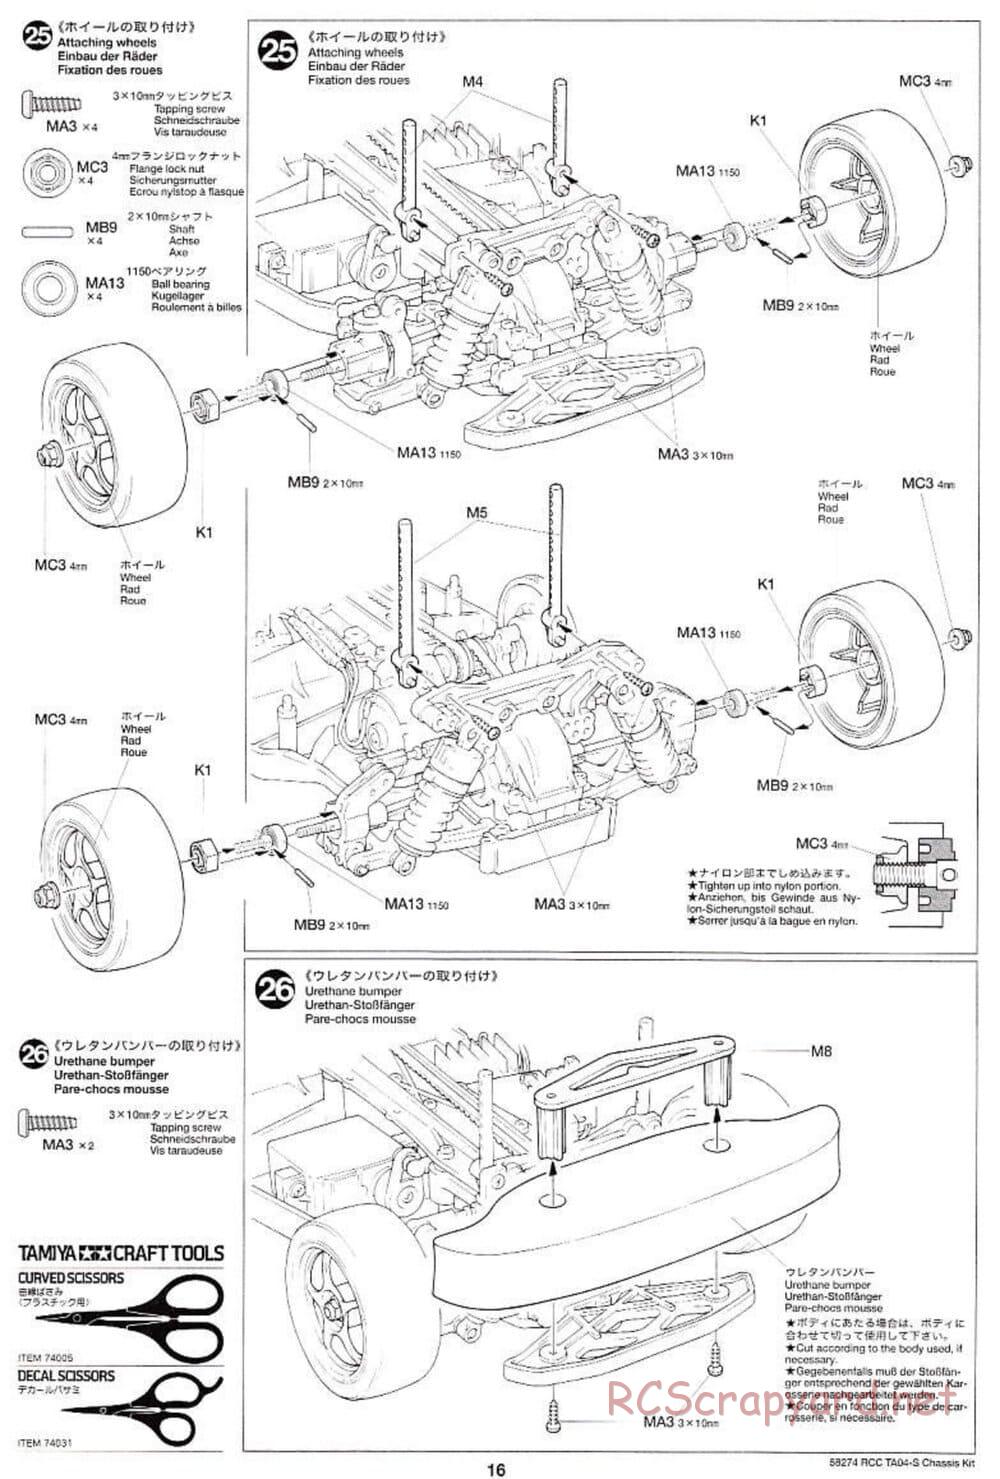 Tamiya - TA-04S Chassis - Manual - Page 16